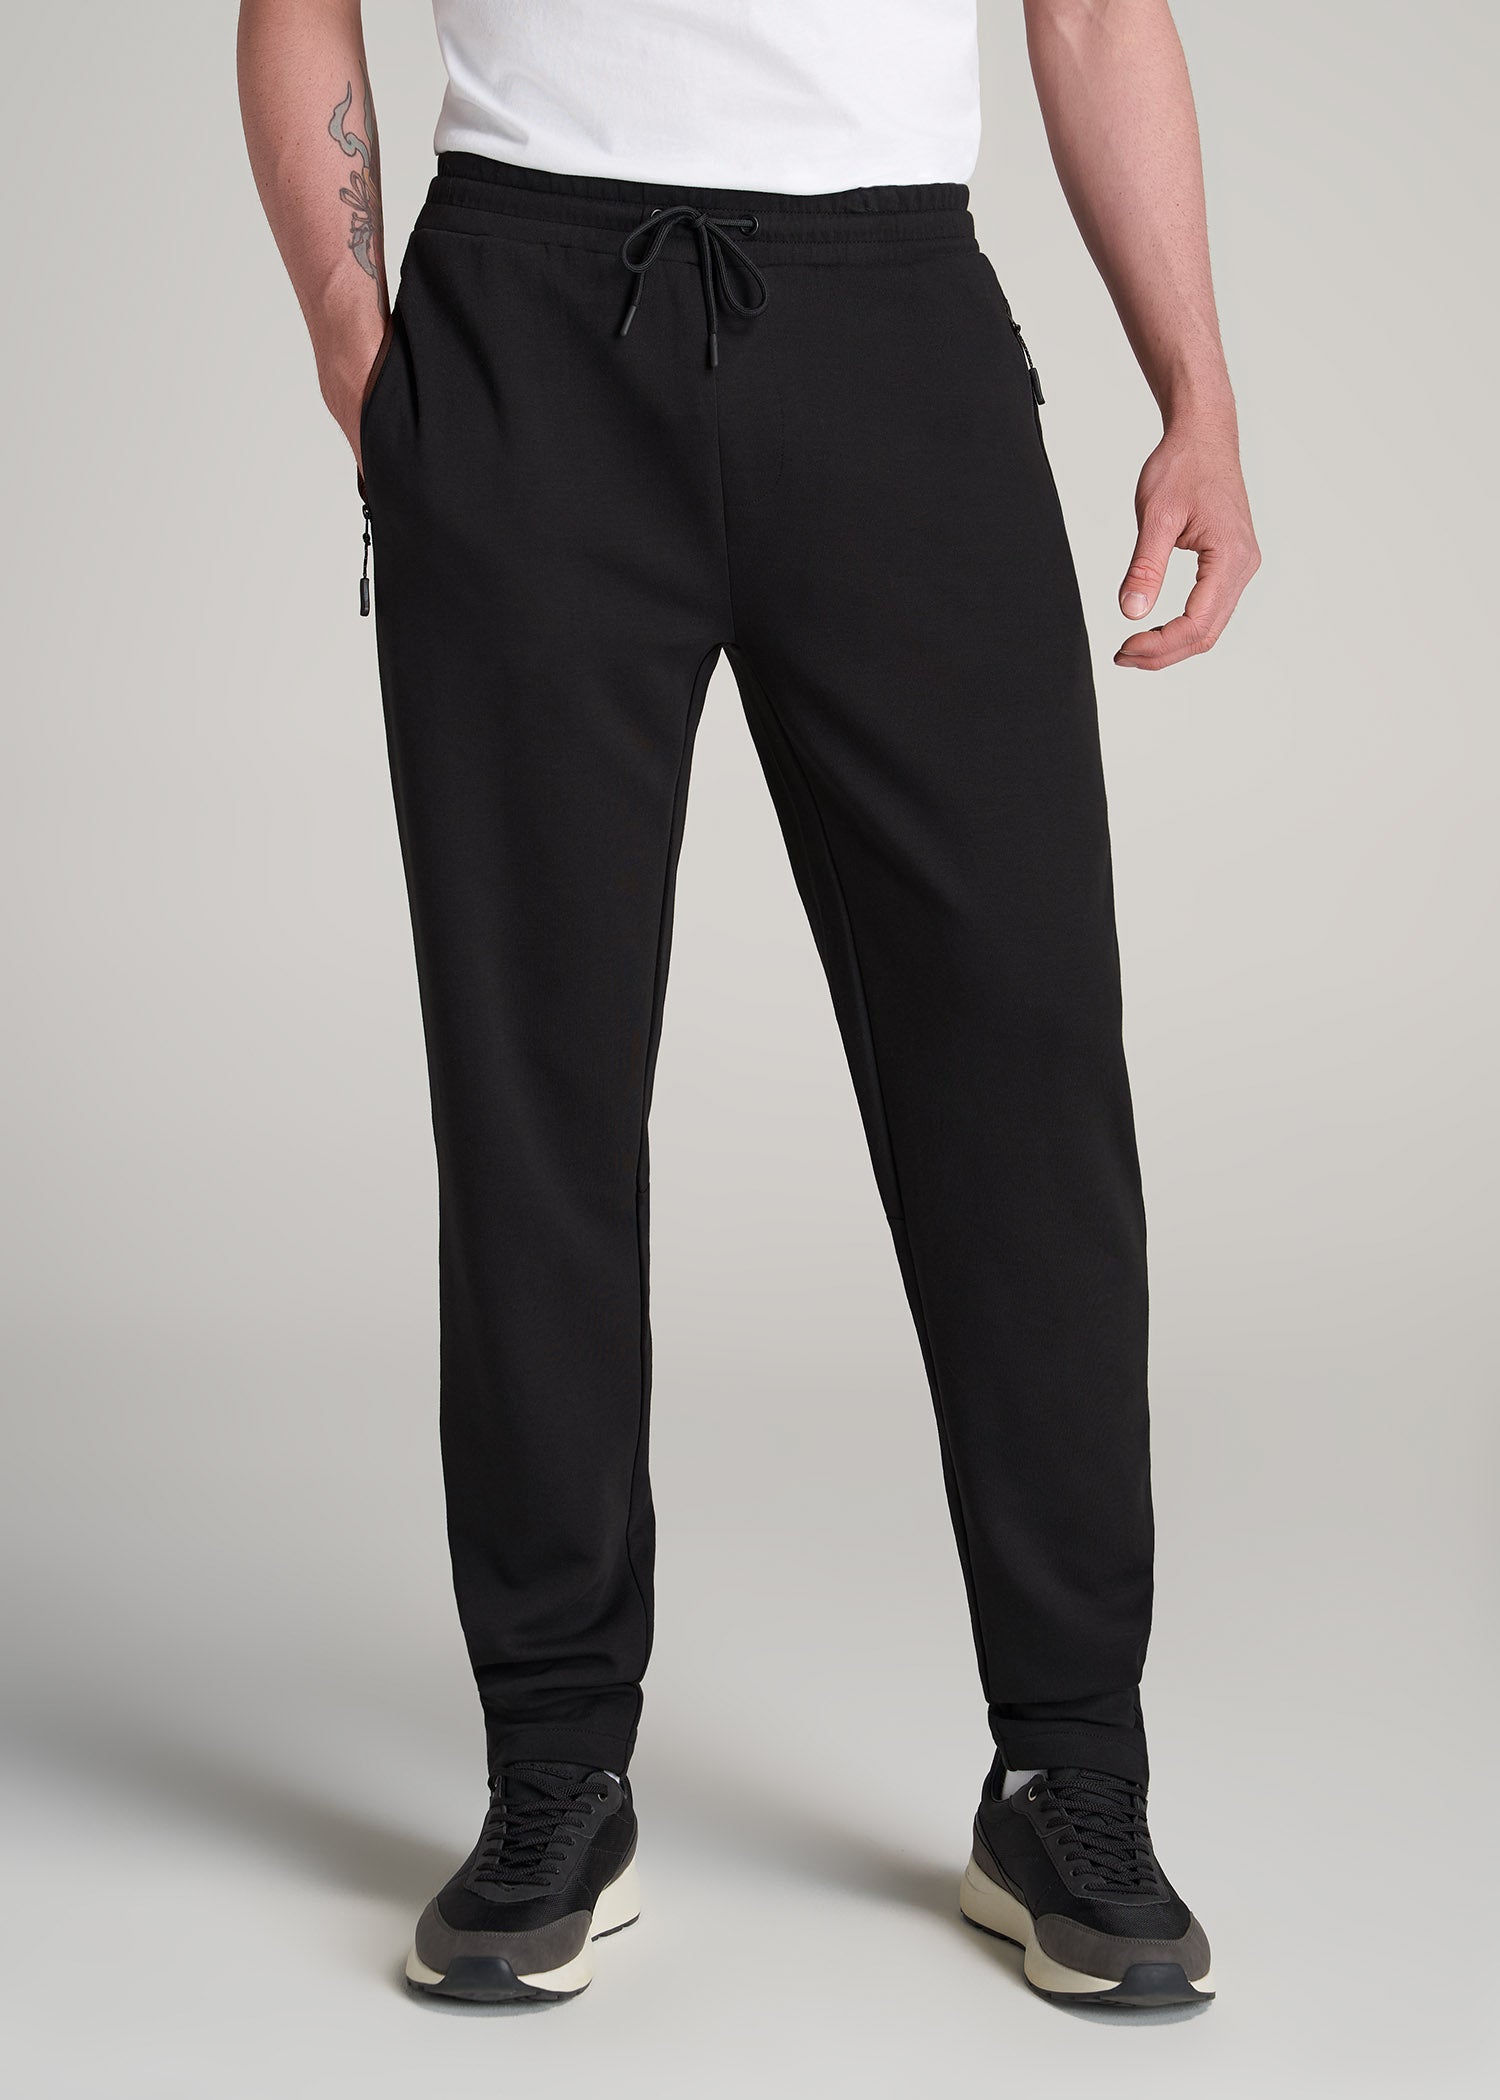 Men's Joggers with Zipper Pockets - Black